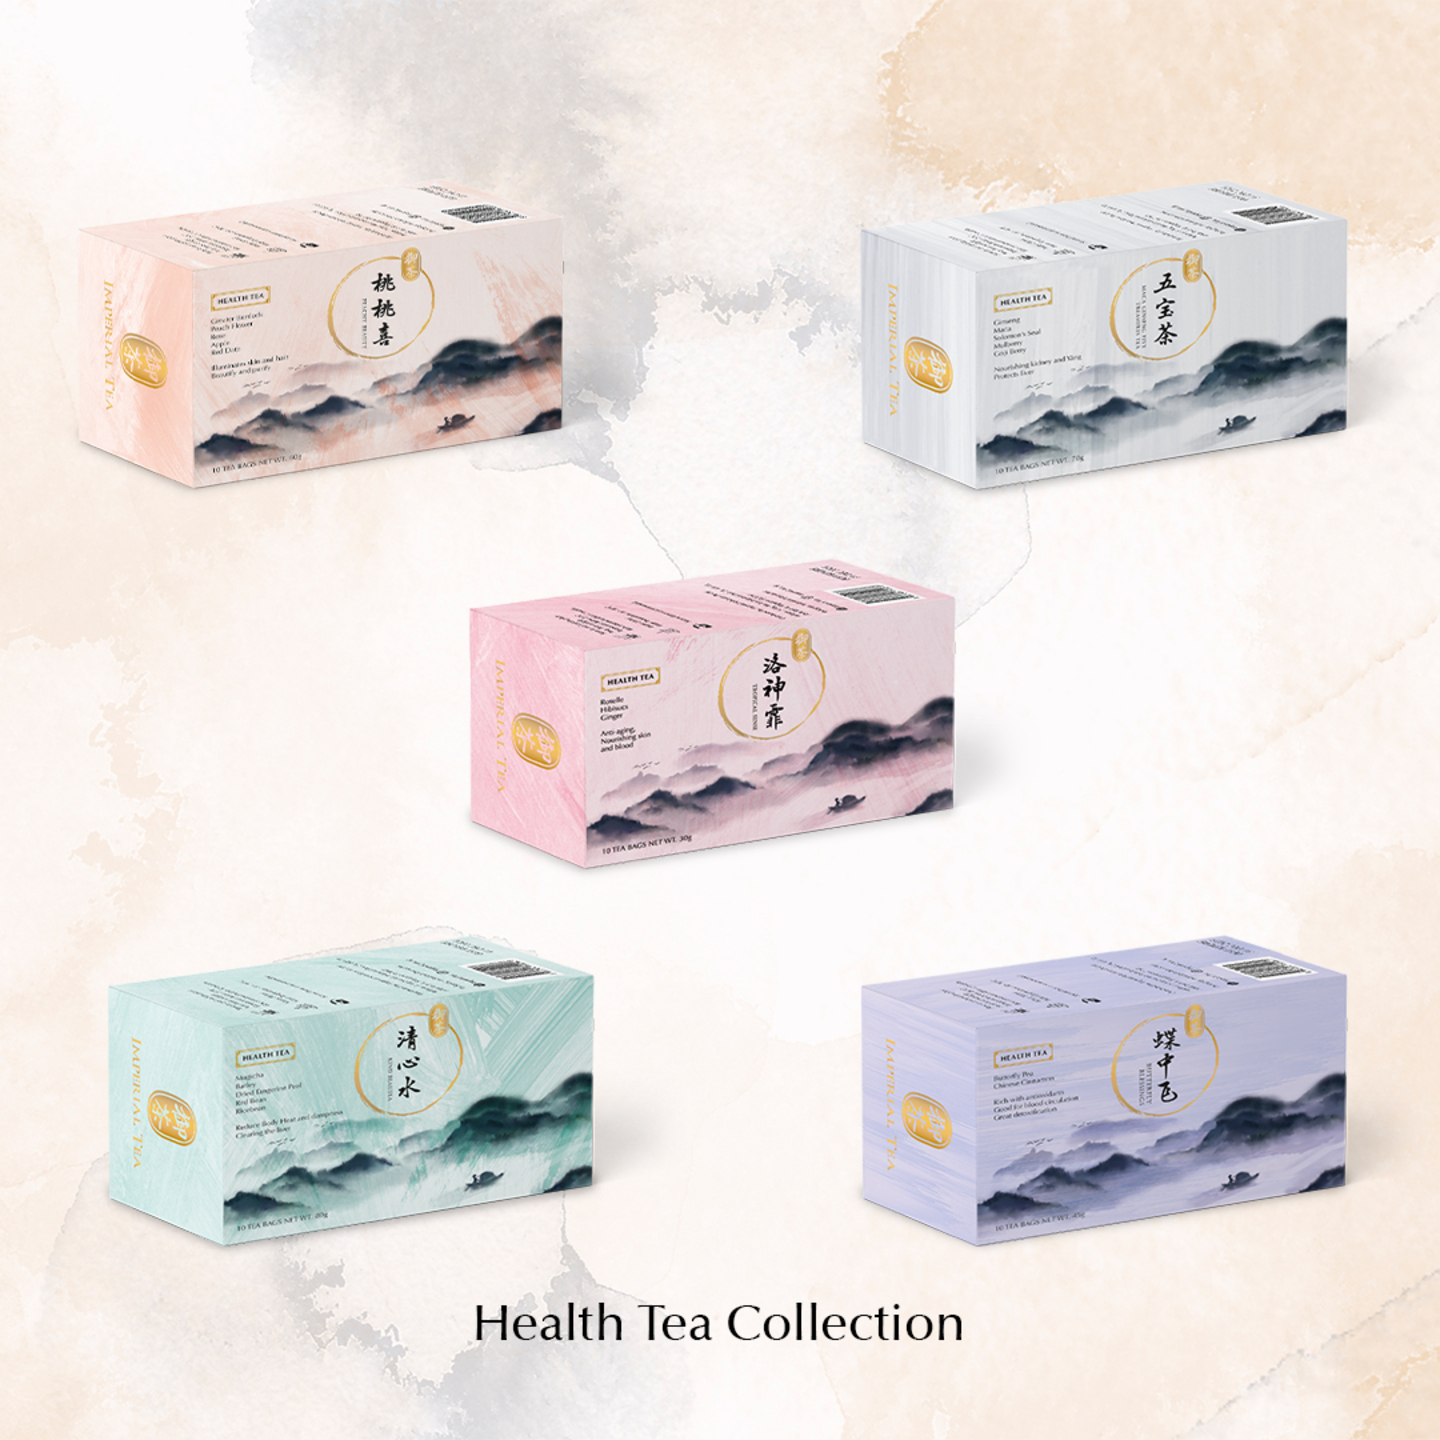 Imperial Tea 御茶 Health Tea Collection 养生茶系列